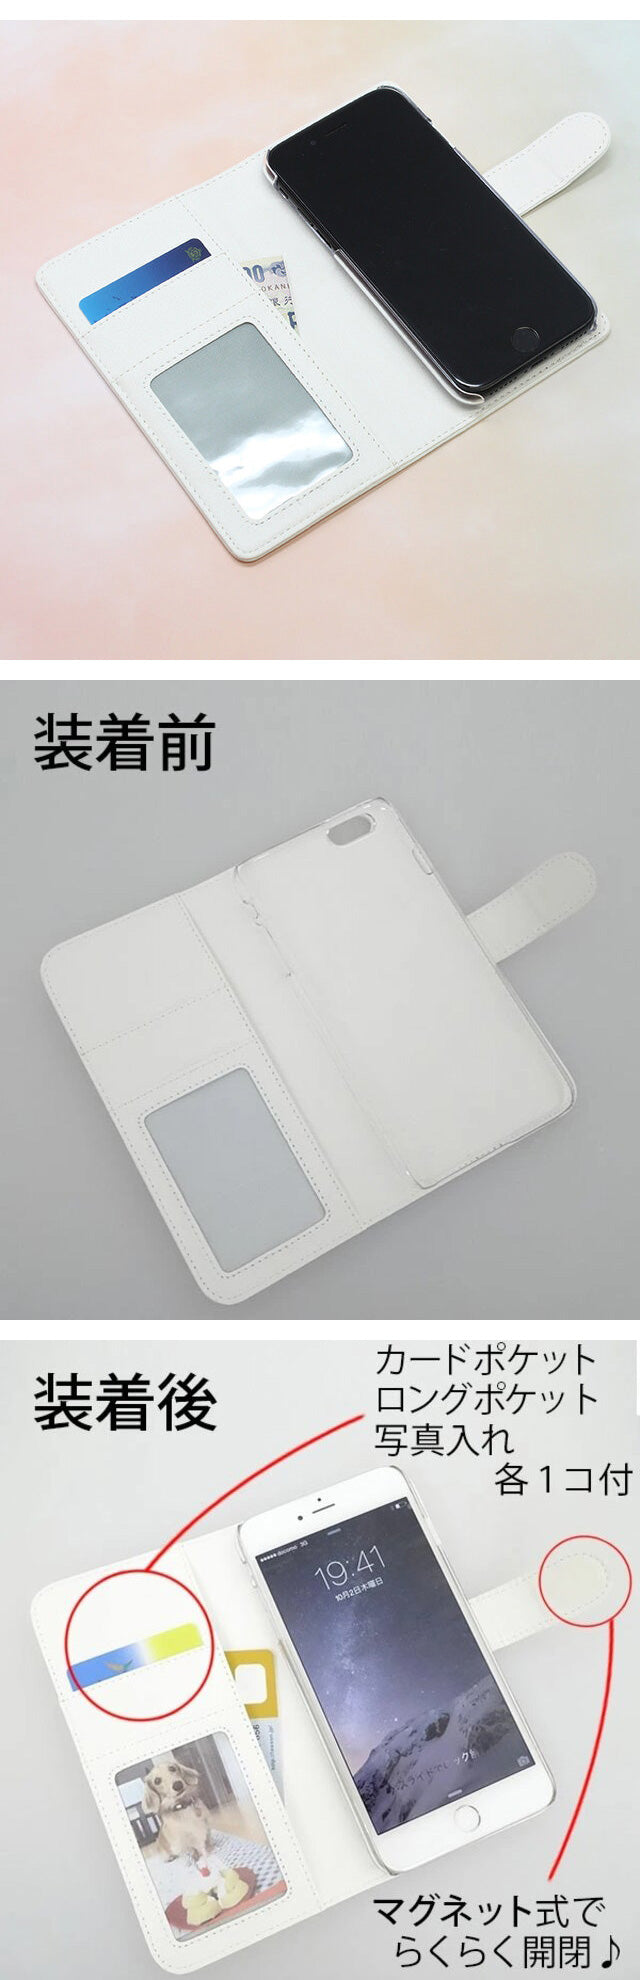 あんしんファミリースマホ A303ZT SoftBank スマホケース 手帳型 ニンジャ 印刷 忍者 ベルト